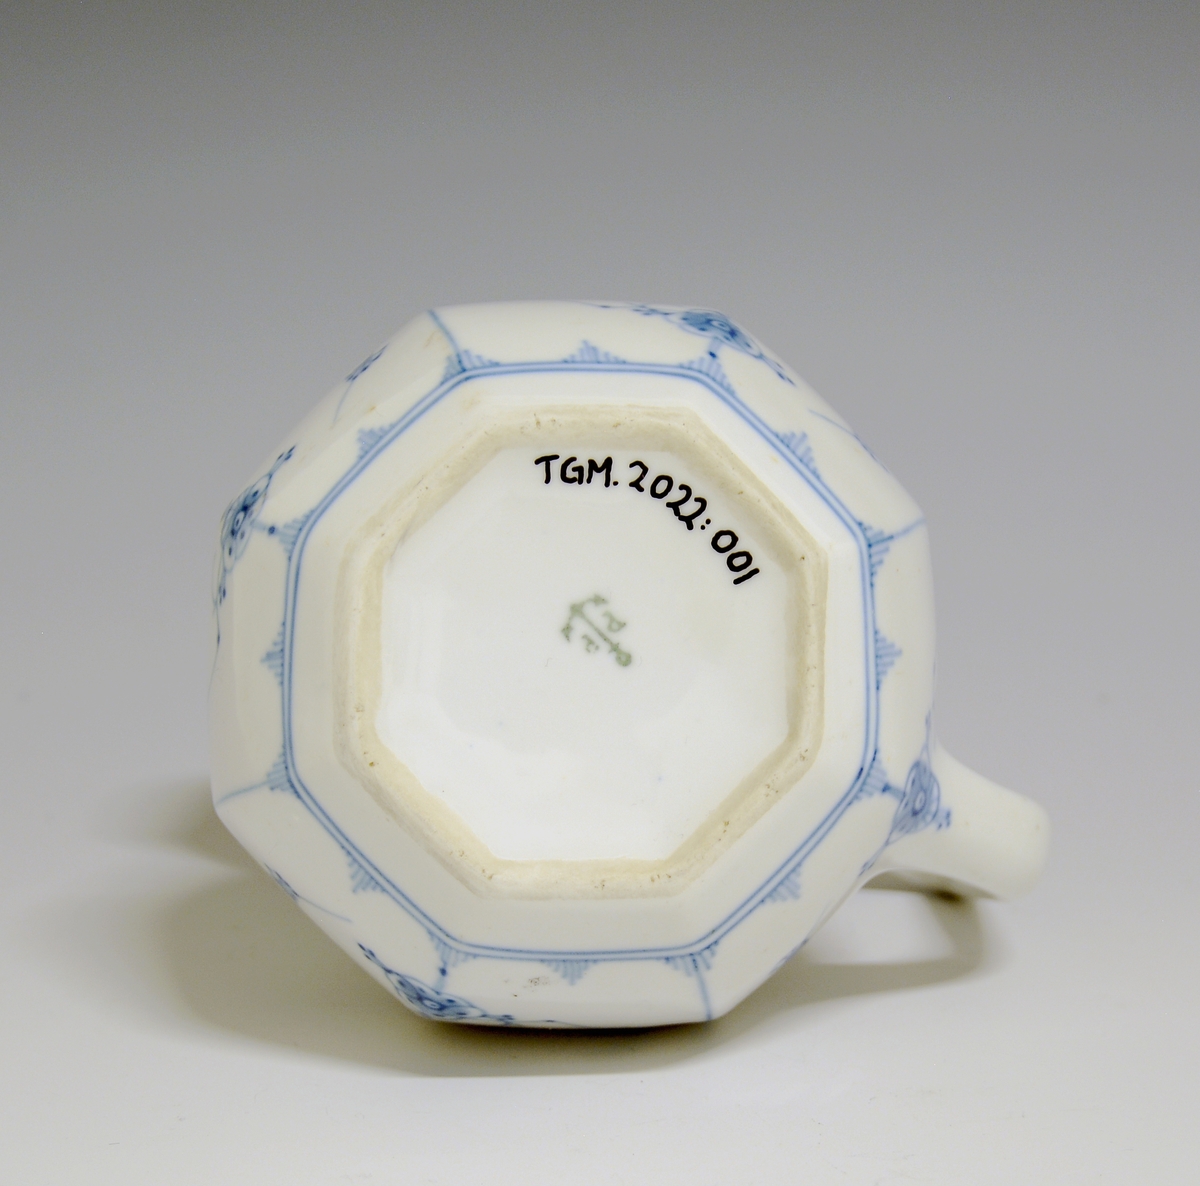 Melkemugge av porselen med hvit glasur. Høy, kantet hank. Dekorert med stråmønsteri blått.

Modellnr: 1746
Finnes i priskuranten for 1924.